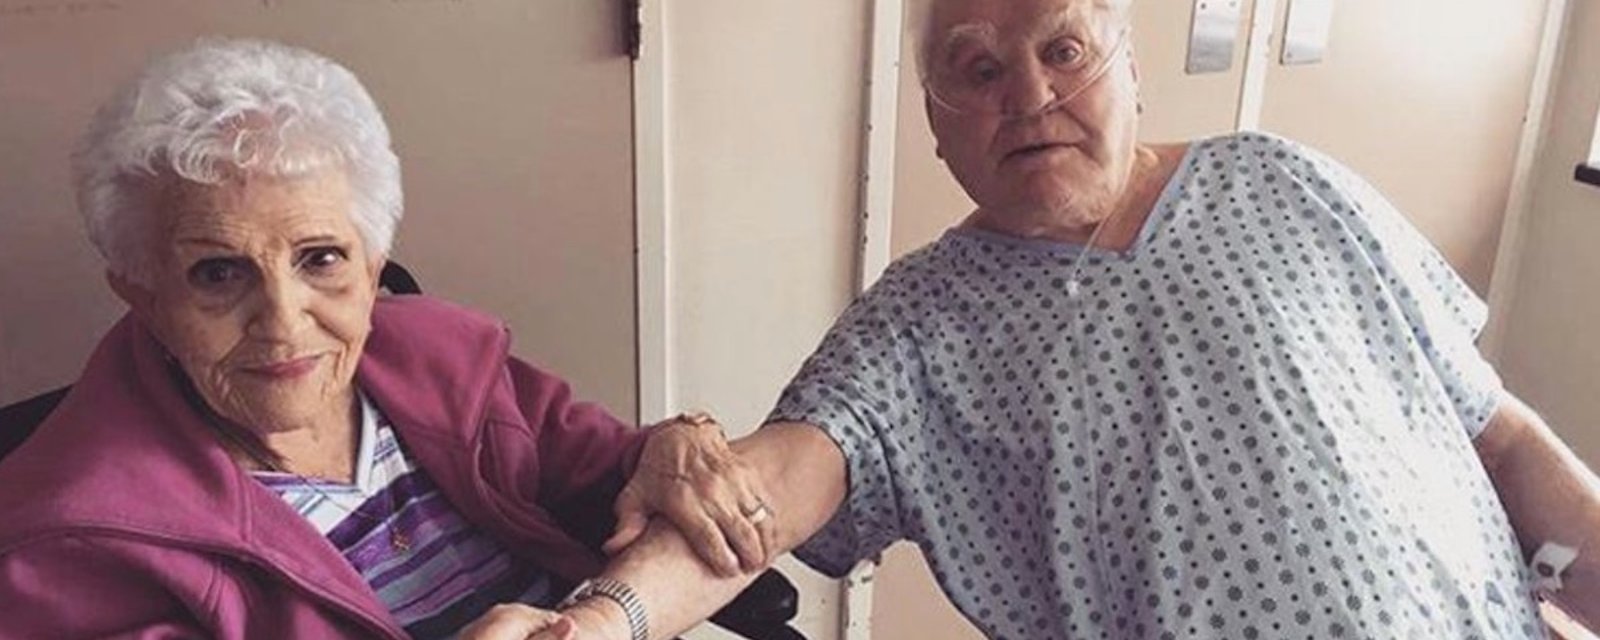 Les grands-parents d'un chanteur québécois sont à l'hôpital... Il souhaite vous transmettre ce message